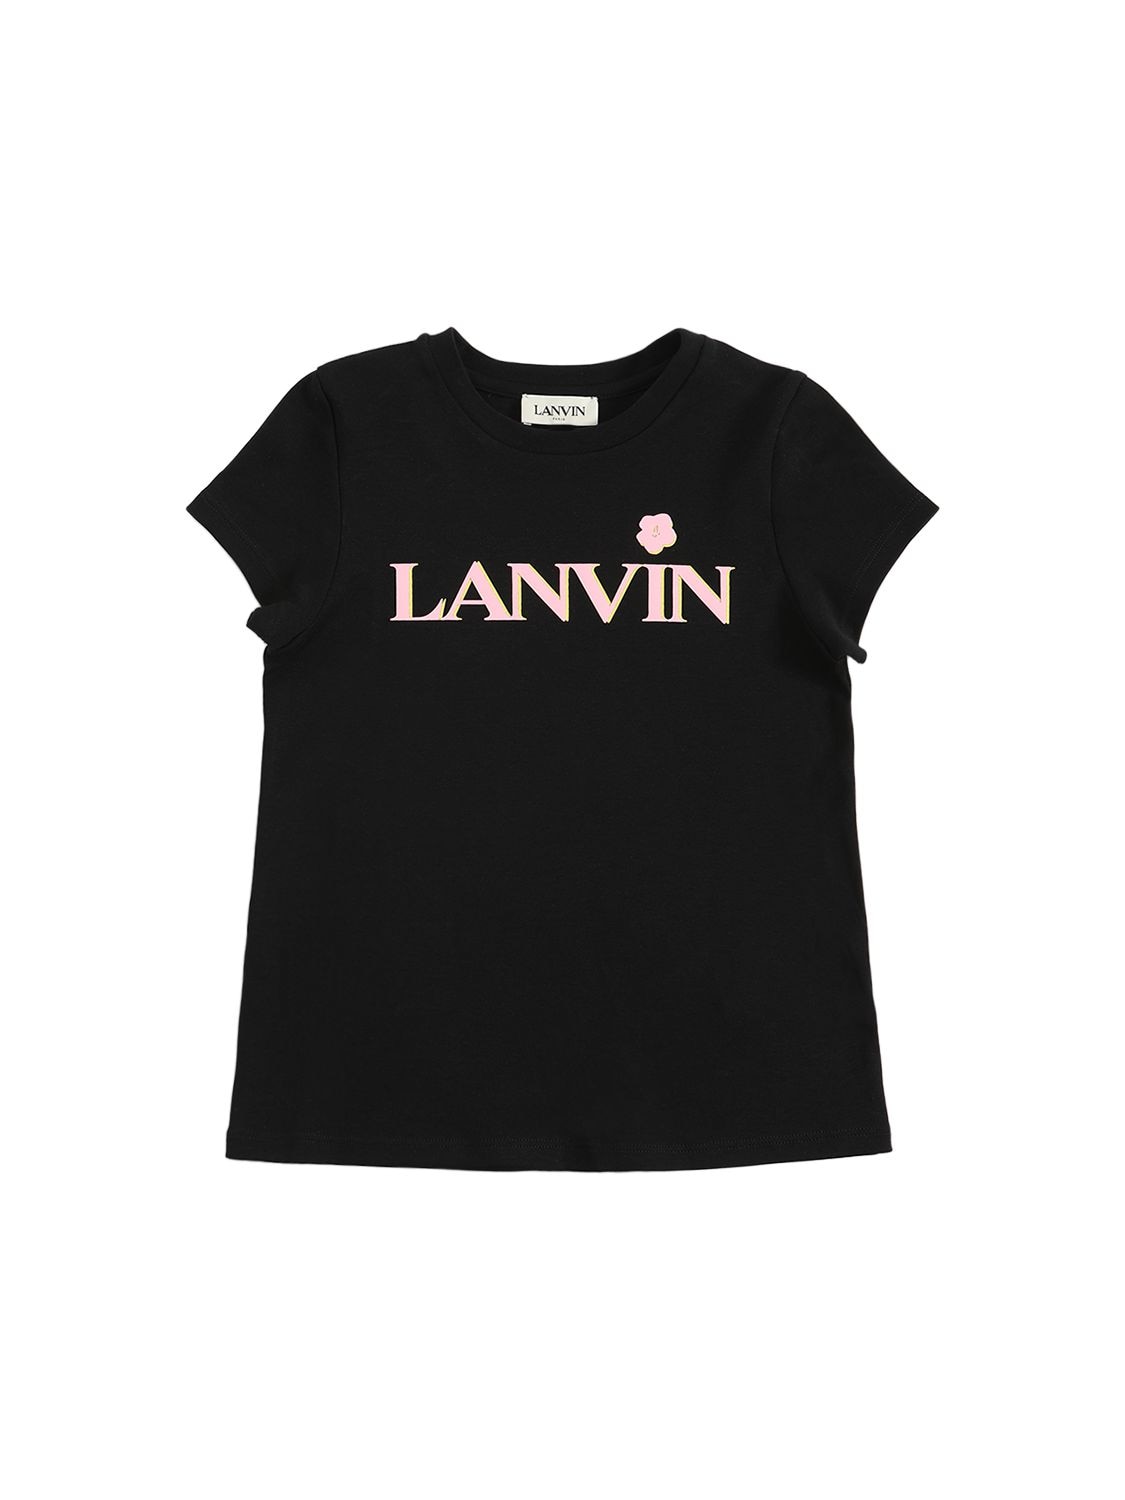 Lanvin Kids' Printed Logo Cotton Jersey T-shirt In Black